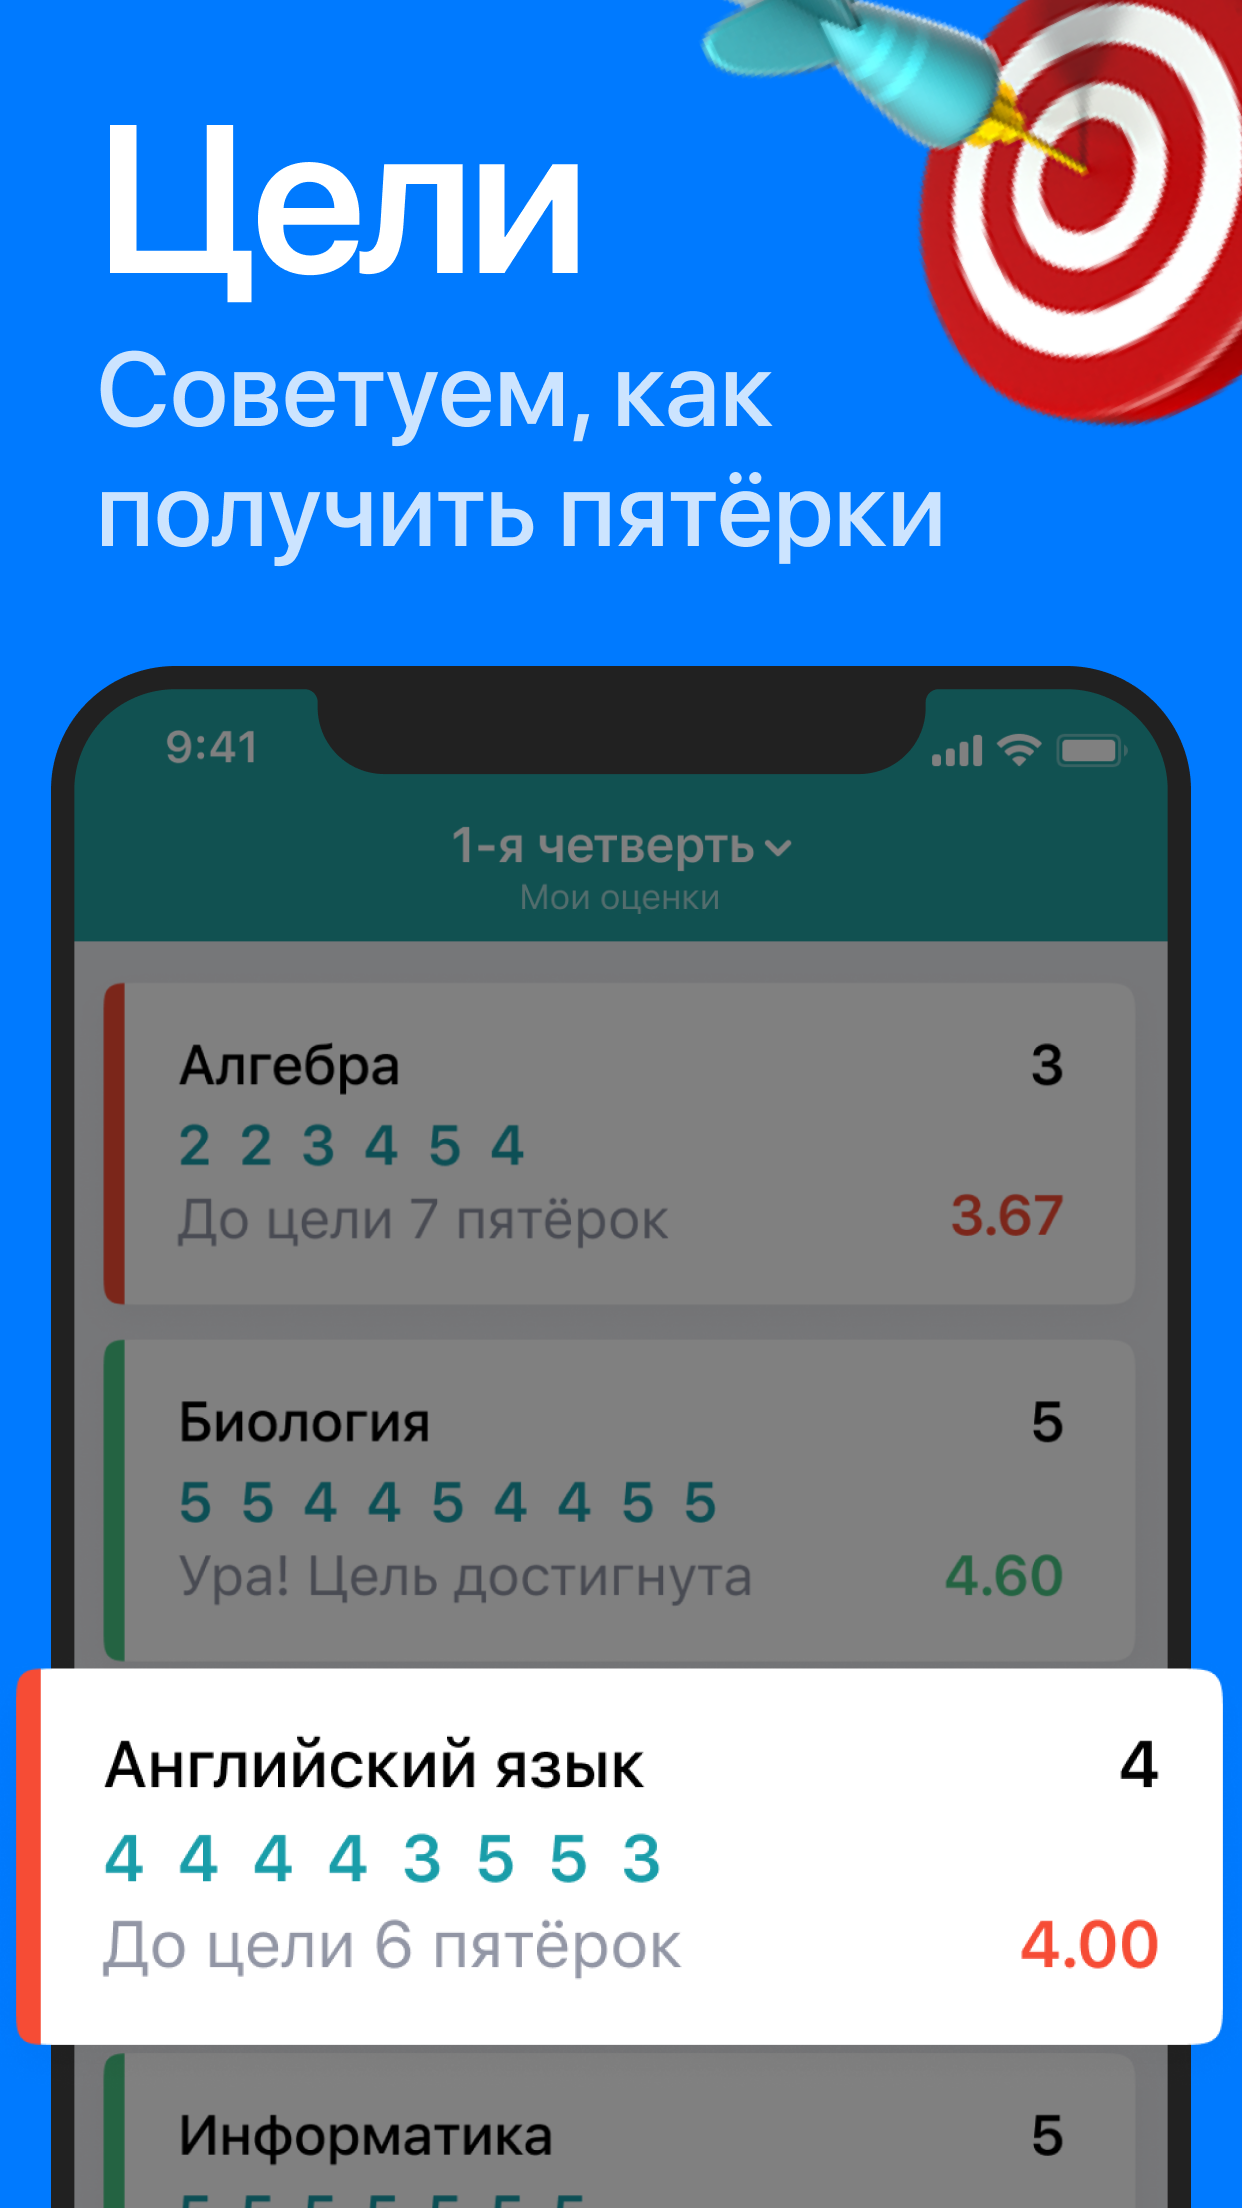 Android application Дневничок - электронный дневник МЭШ, Спб, СГО, РТ screenshort